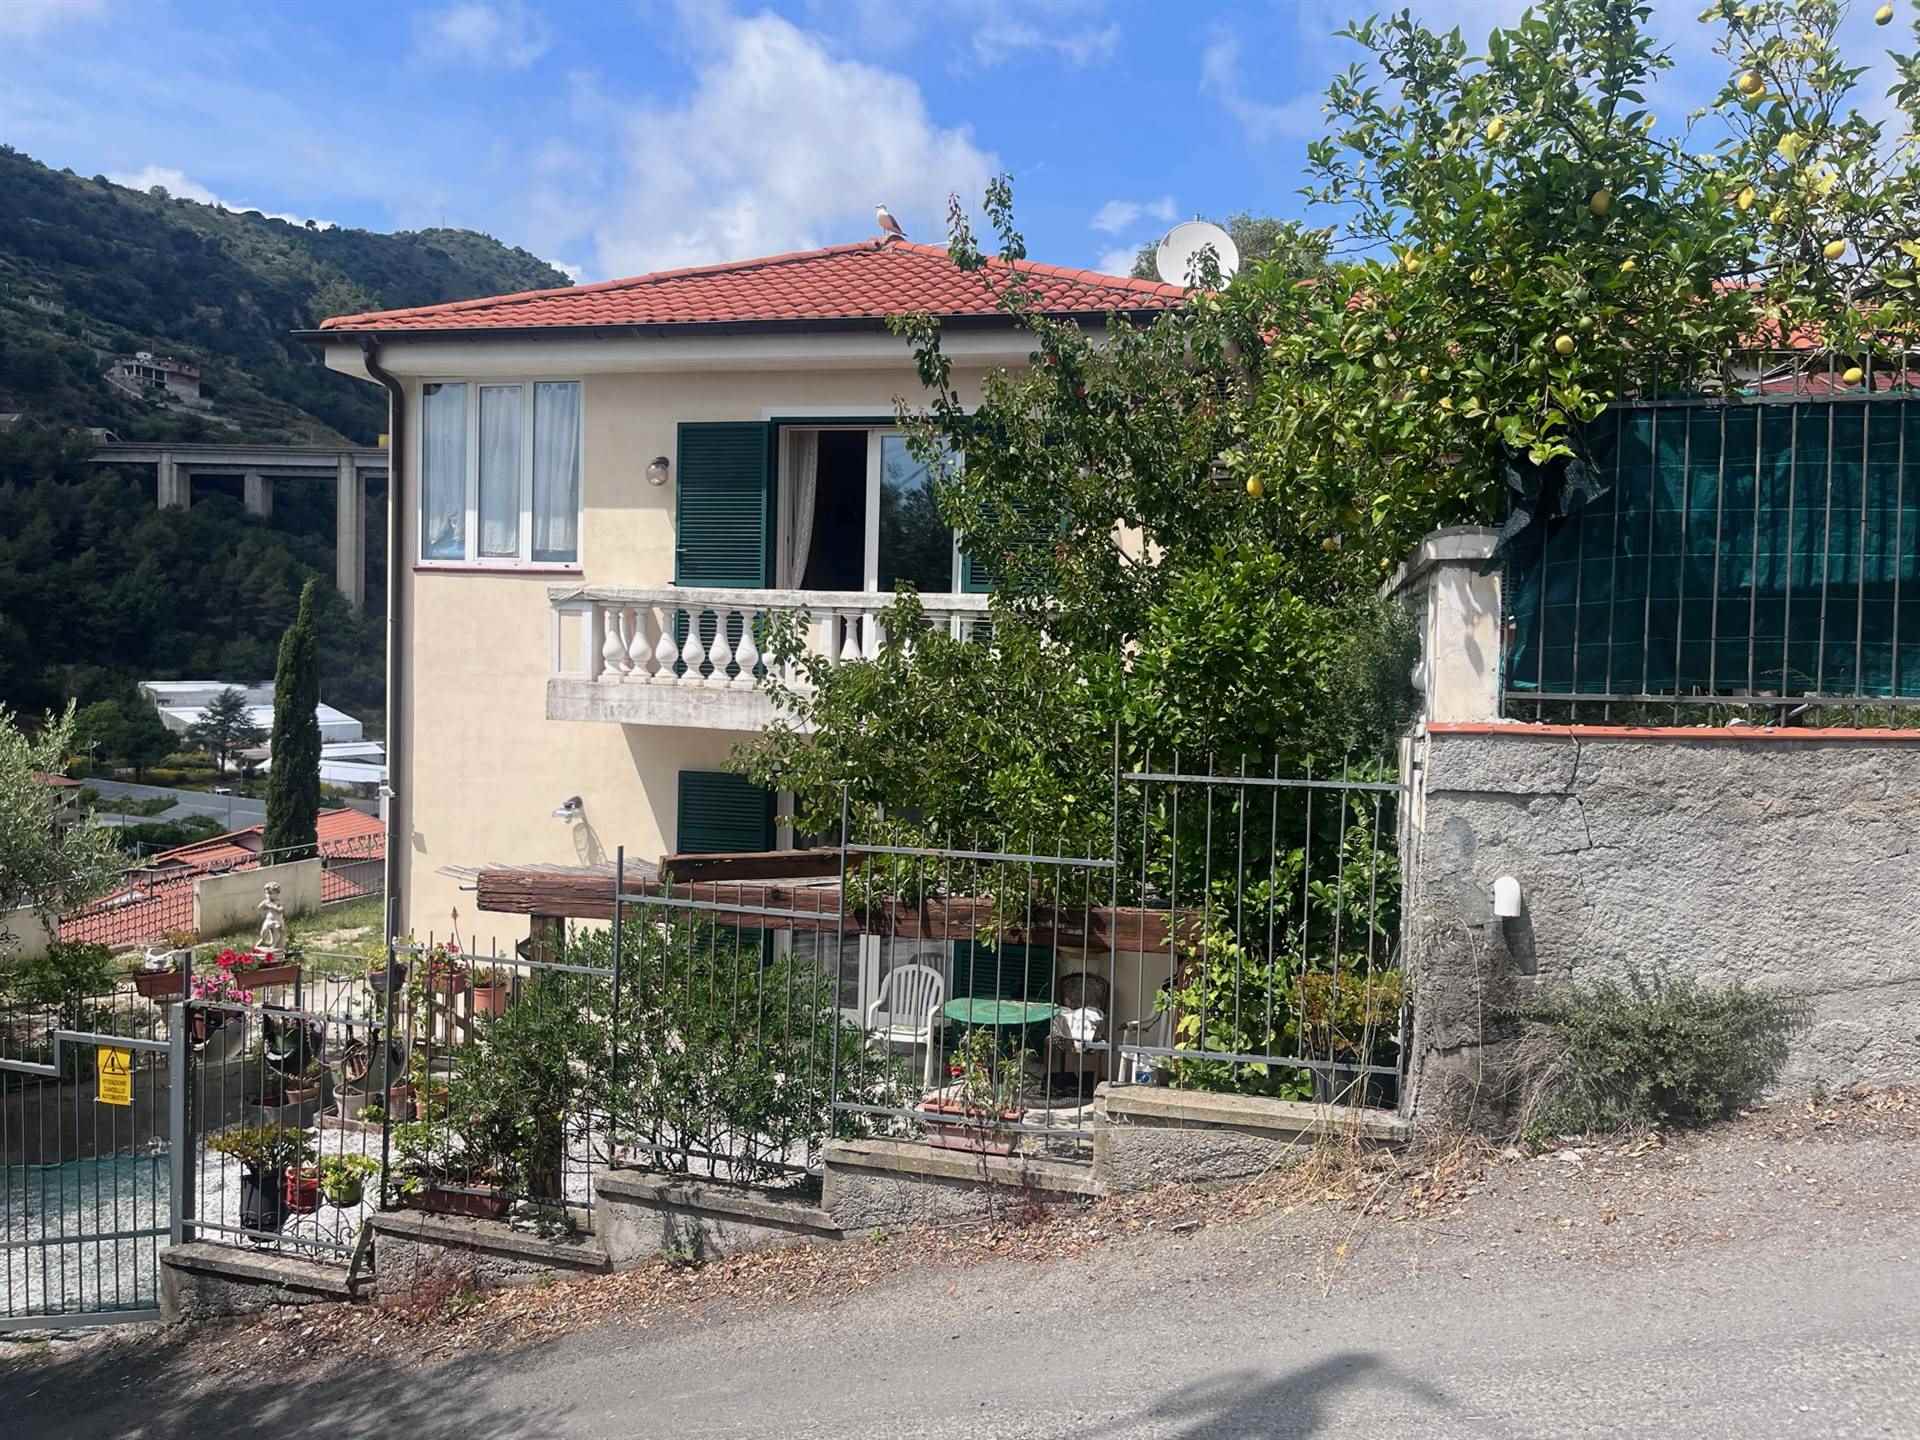 Villa in vendita a Vallecrosia, 7 locali, zona Località: PIANI DI VALLECROSIA, prezzo € 470.000 | PortaleAgenzieImmobiliari.it